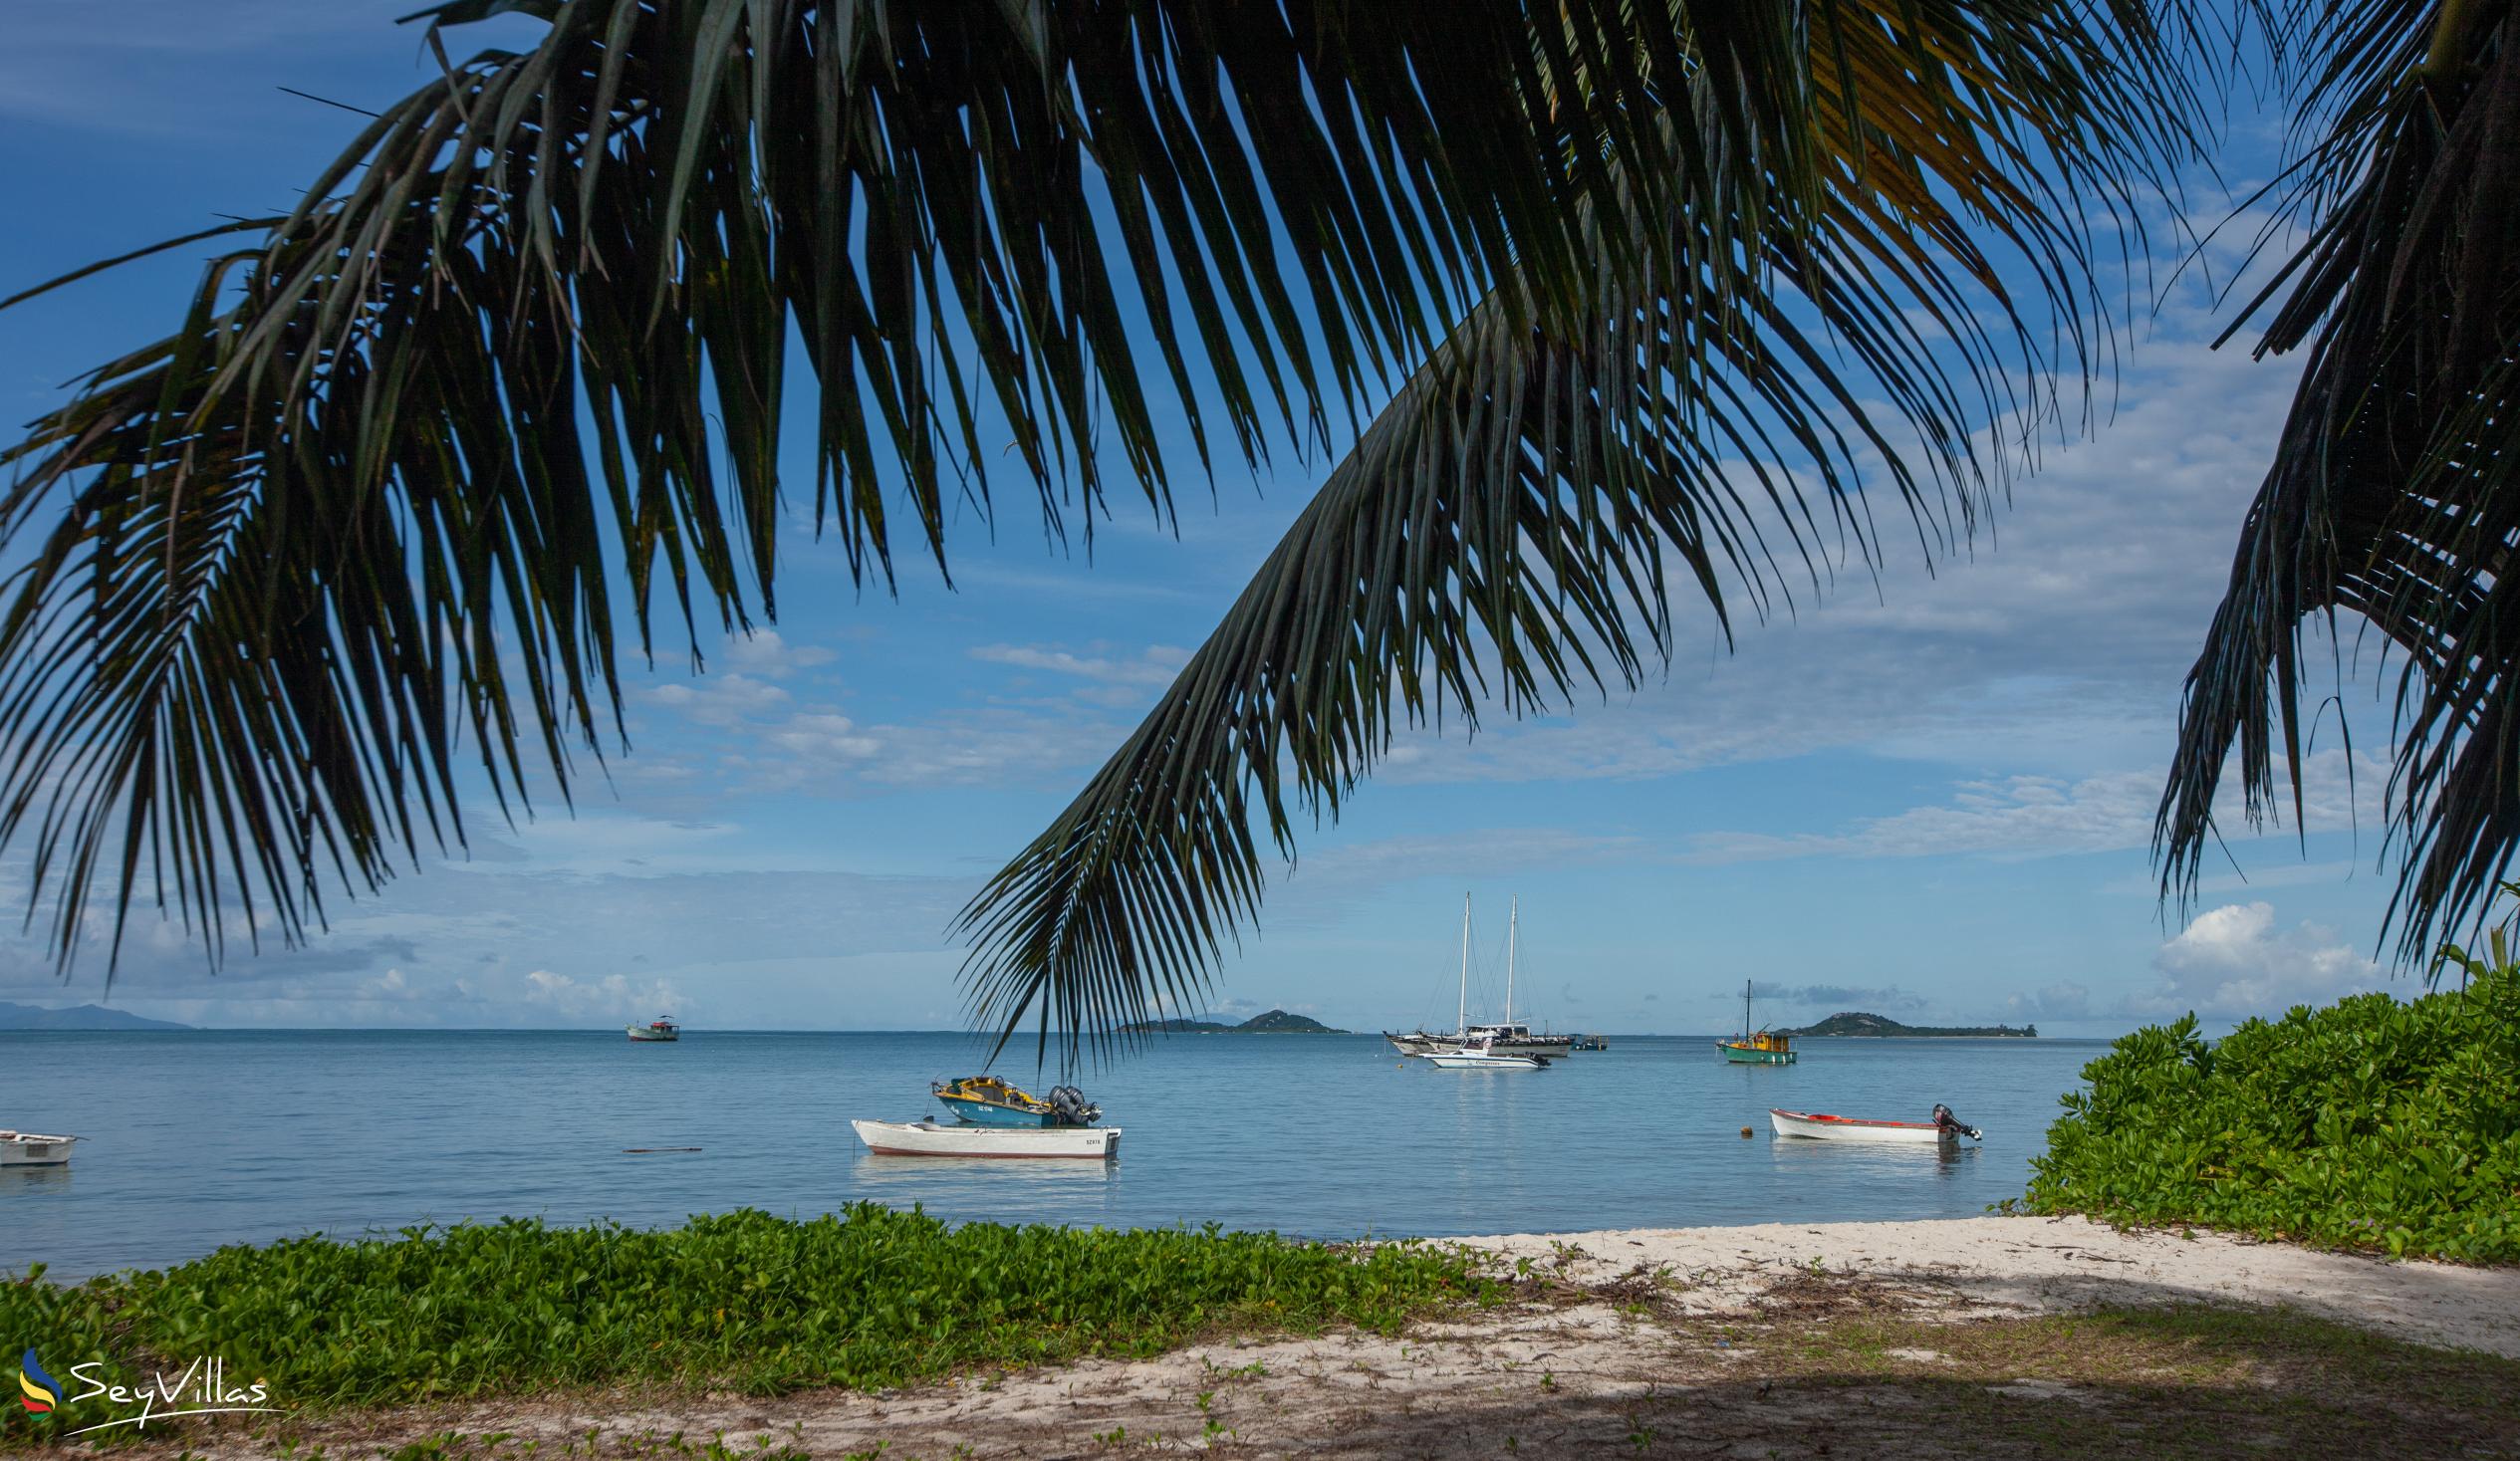 Photo 2: Hotel Plein Soleil - Location - Praslin (Seychelles)